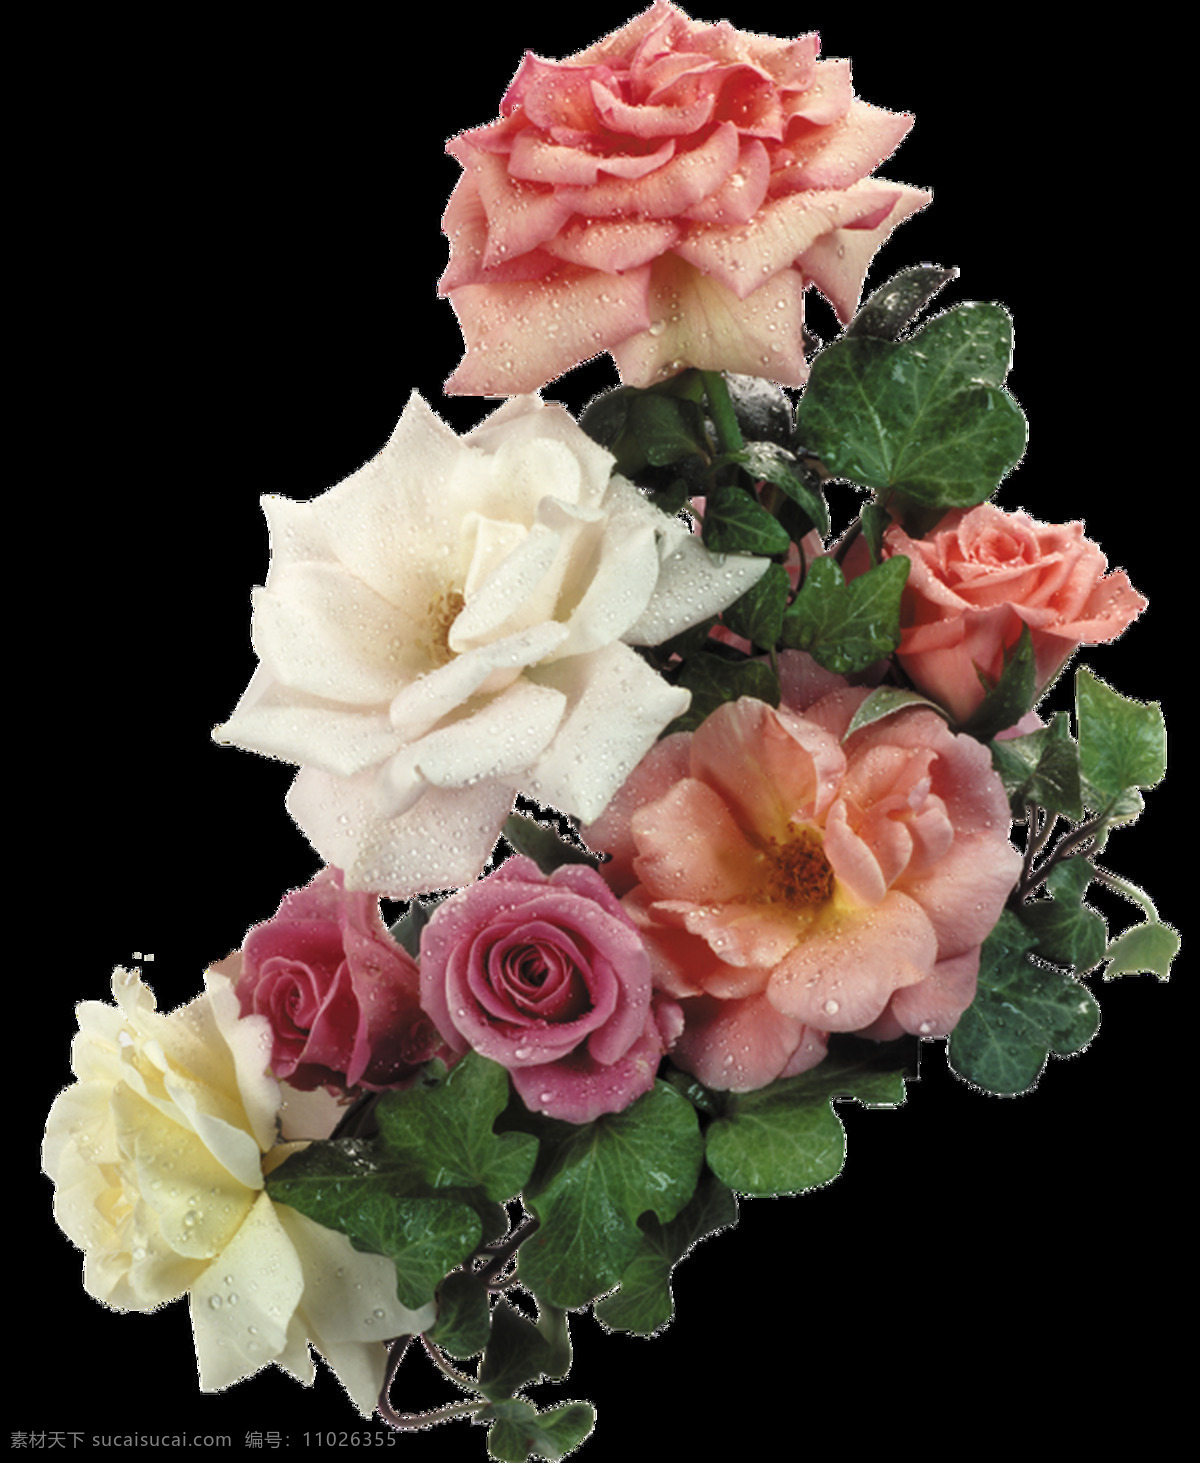 新鲜 带 露水 玫瑰 花束 透明 白色 粉红色 绿叶 免扣素材 透明素材 植物 装饰图片